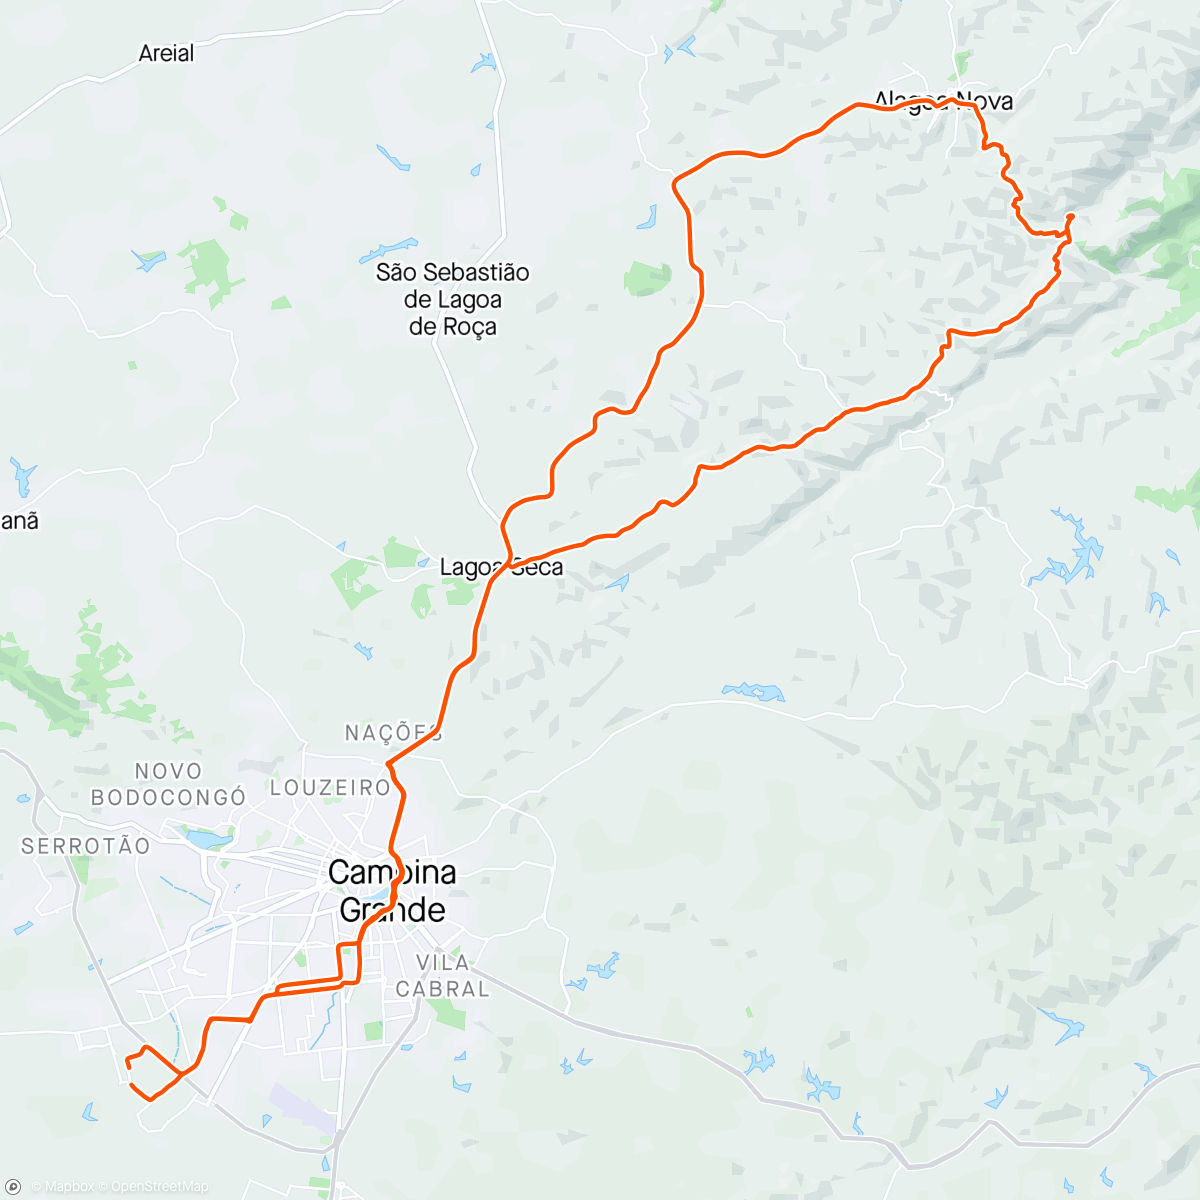 Map of the activity, Pedal Deus é Bom de Domingo - Campina Grande x Cachoeira da Boa Vista - Alagoa Nova - PB 🚴🏻‍♂️💨🙏🏻✨🕊️🔥